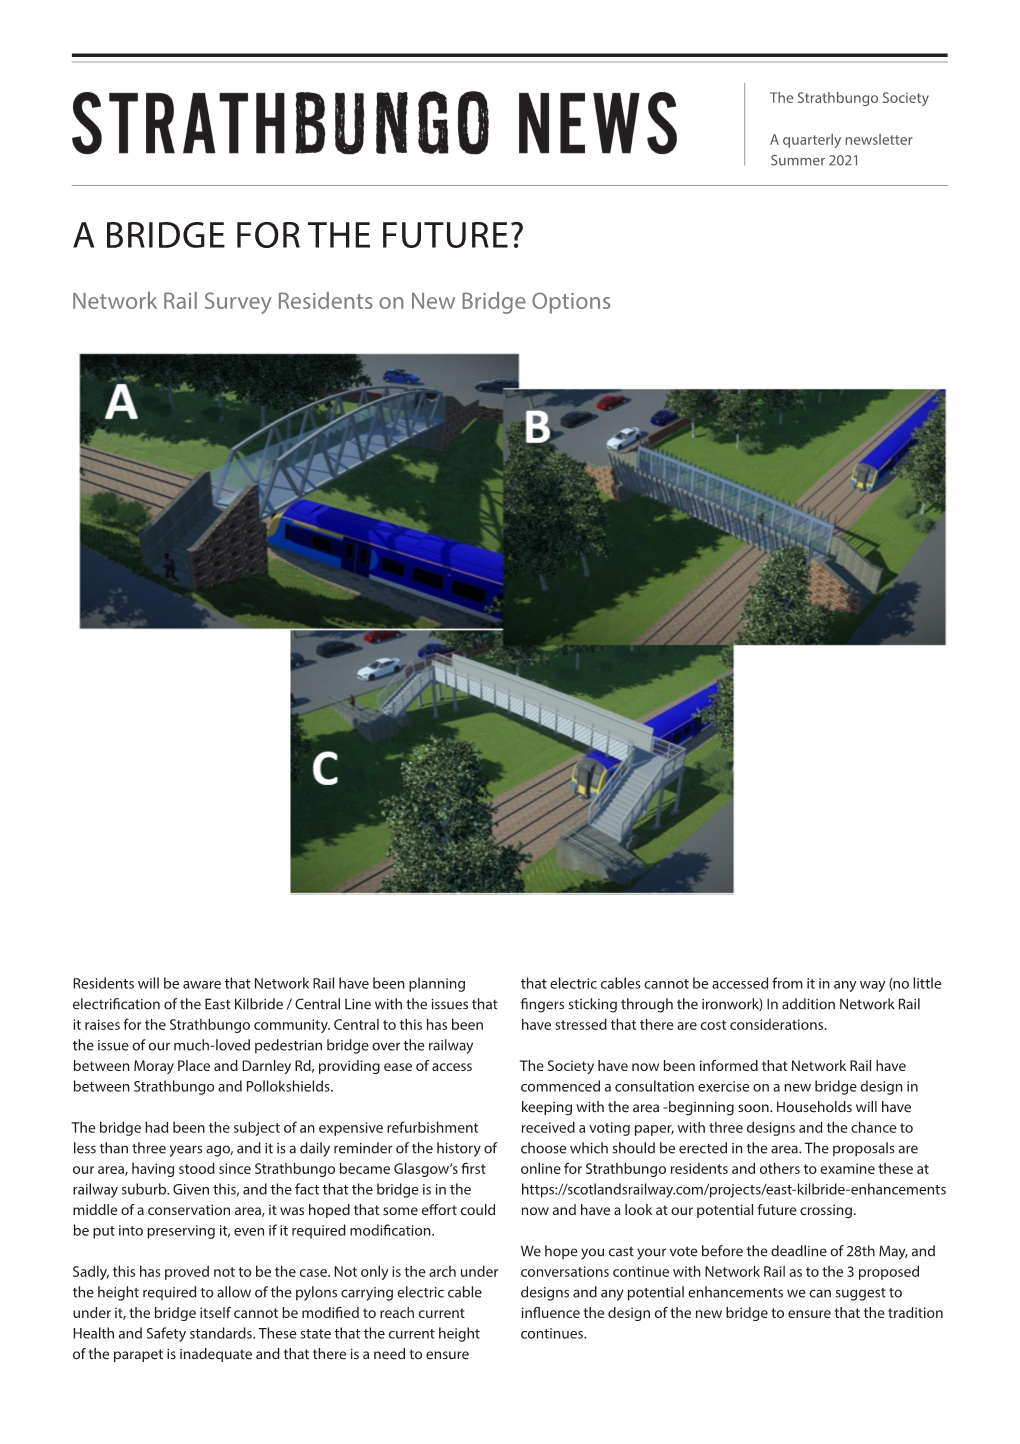 A Bridge for the Future?